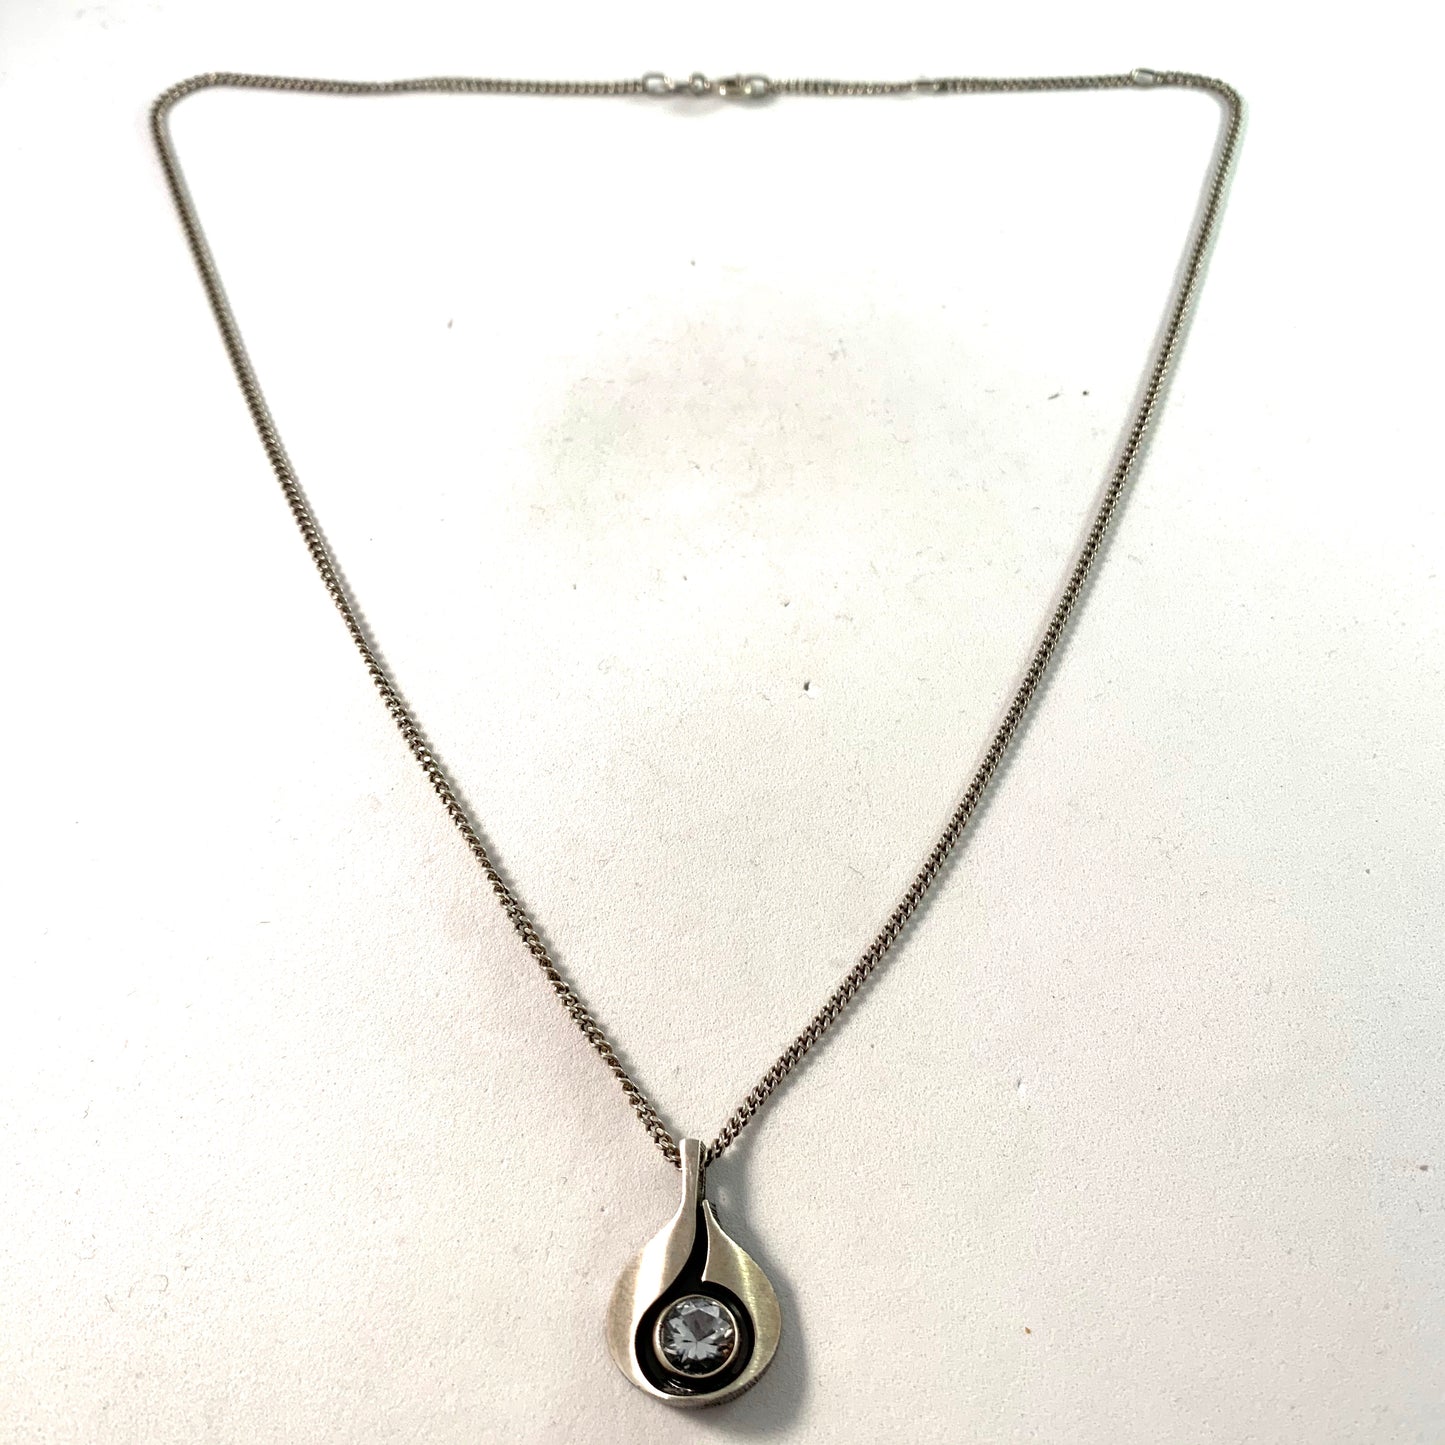 Karl Laine for Finnfeelings, Finland Vintage Sterling Rock Crystal Necklace.